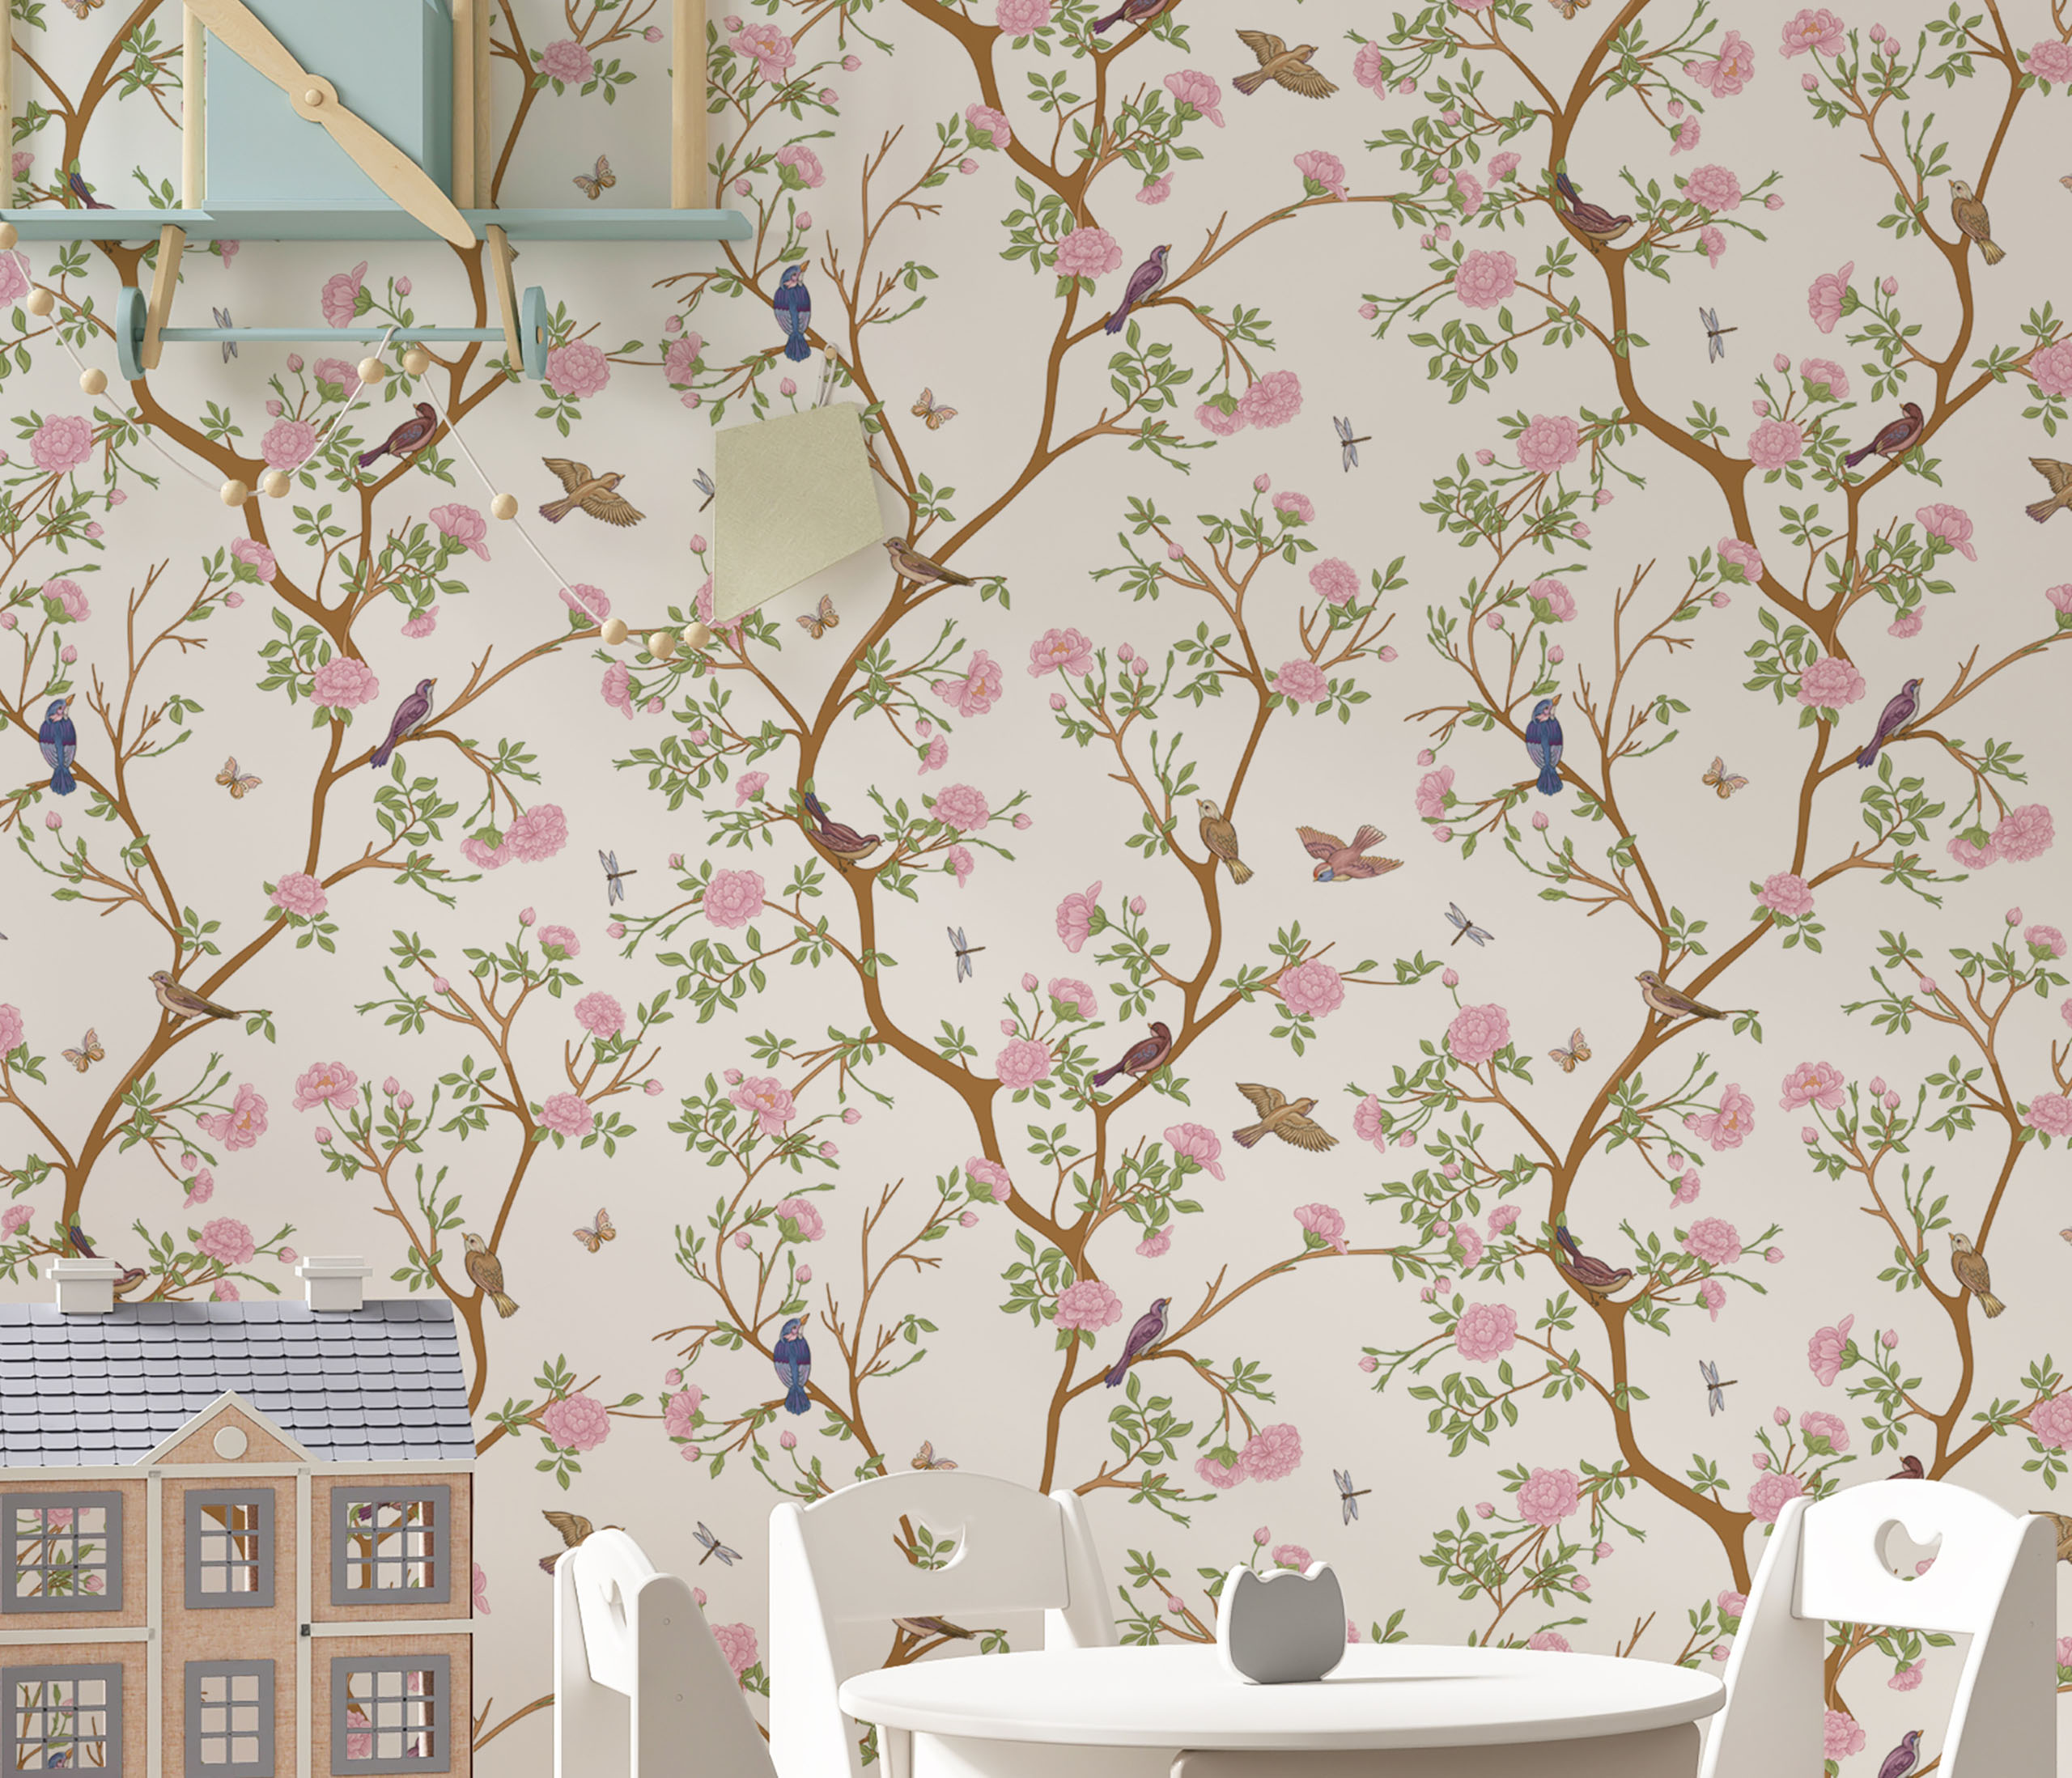 tapeta przedstawiająca wiosenną roślinność wraz z ptakami. Dekoracja ścienna do pokoju dziecięcego i salonu.